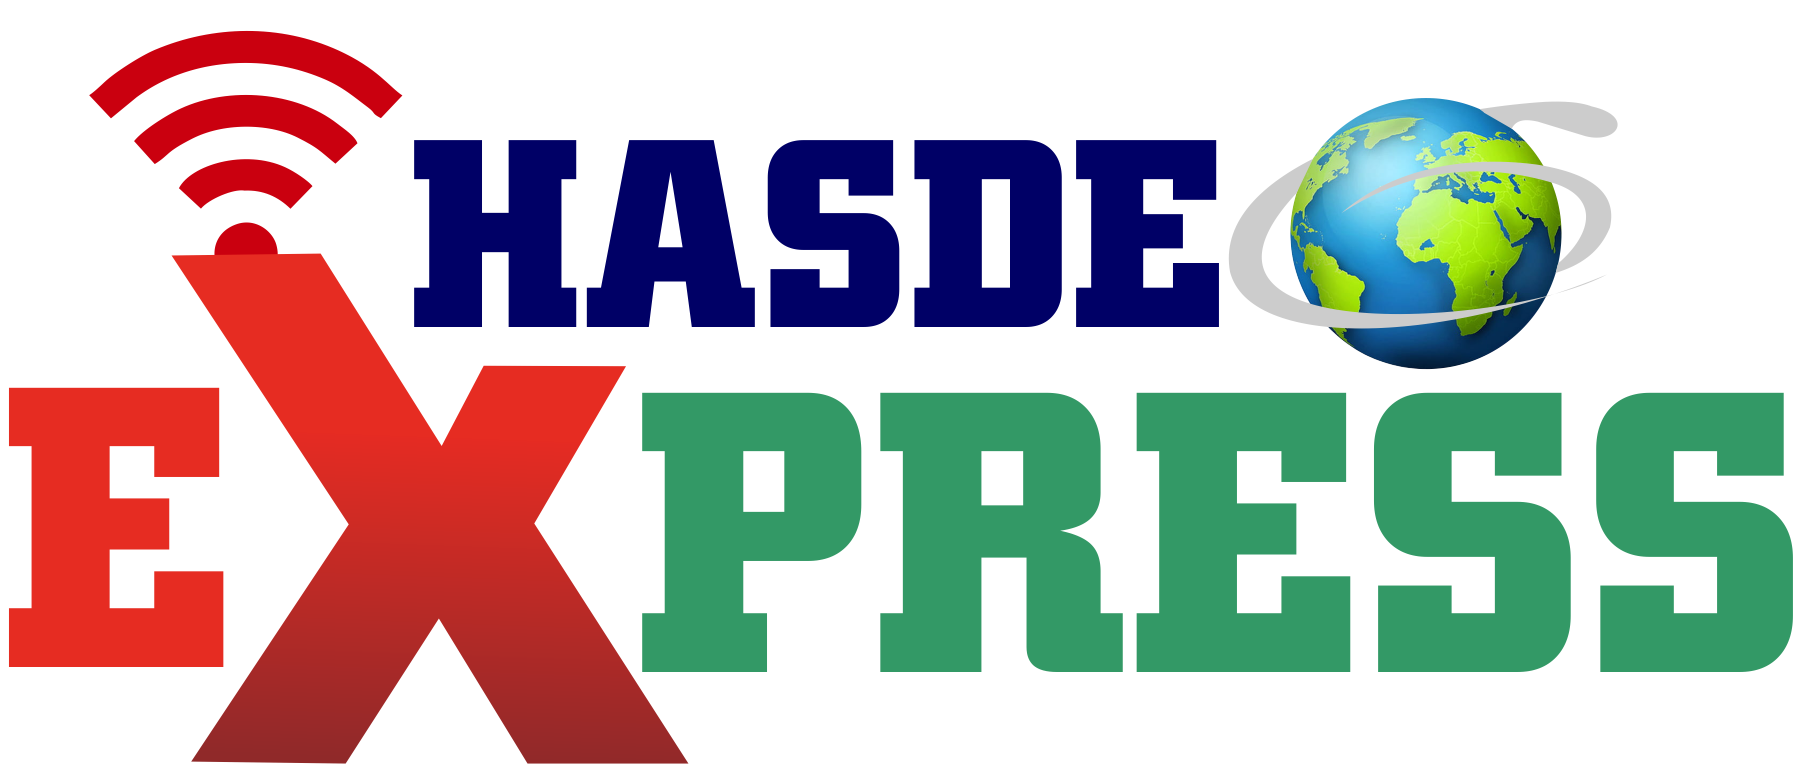 Hasdeo Express